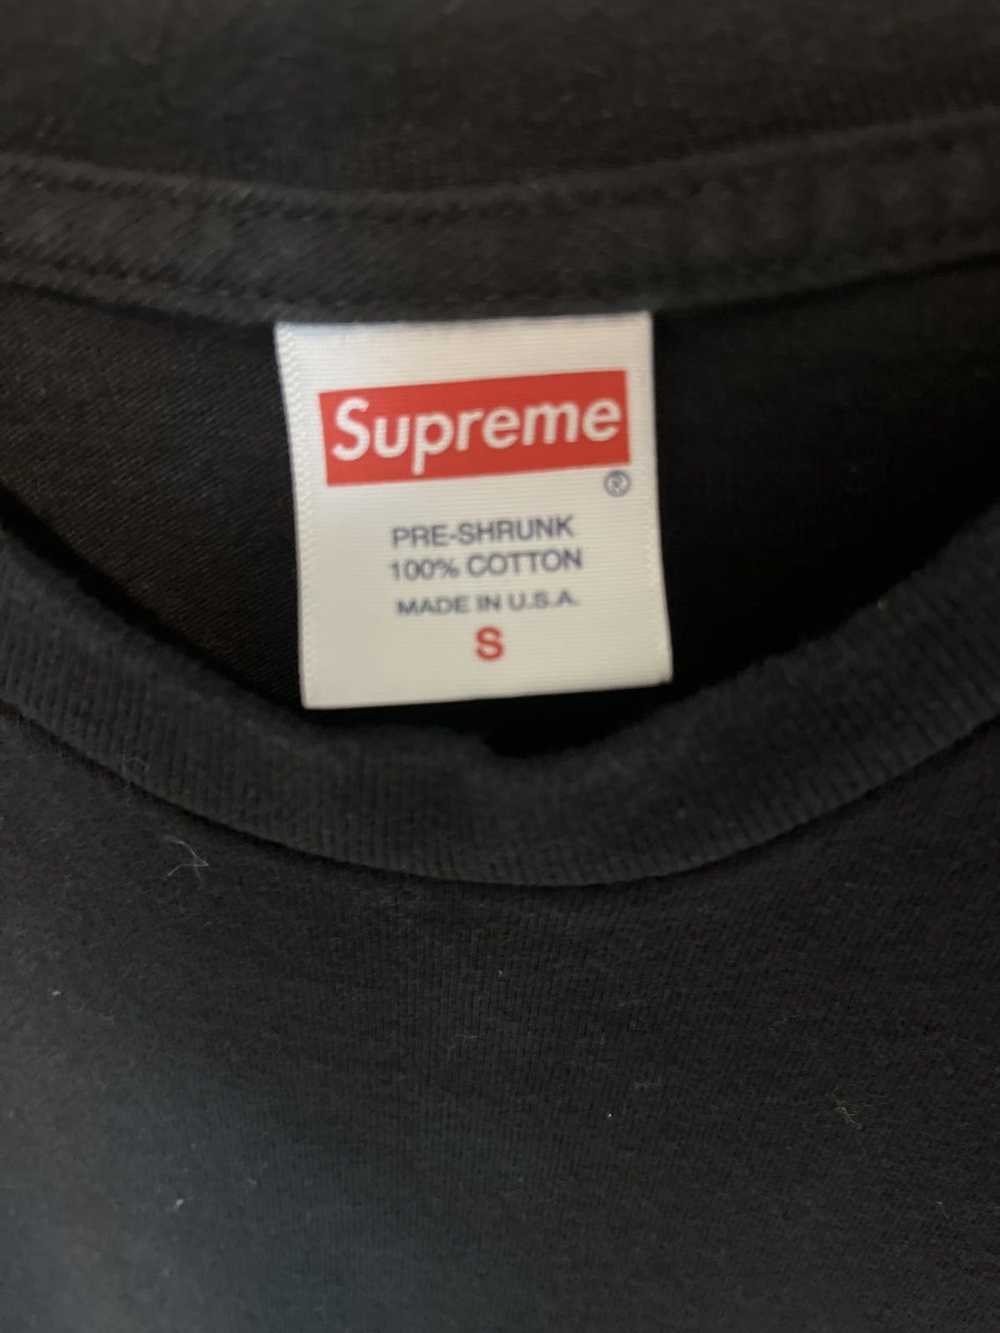 Supreme Supreme shirt - image 3